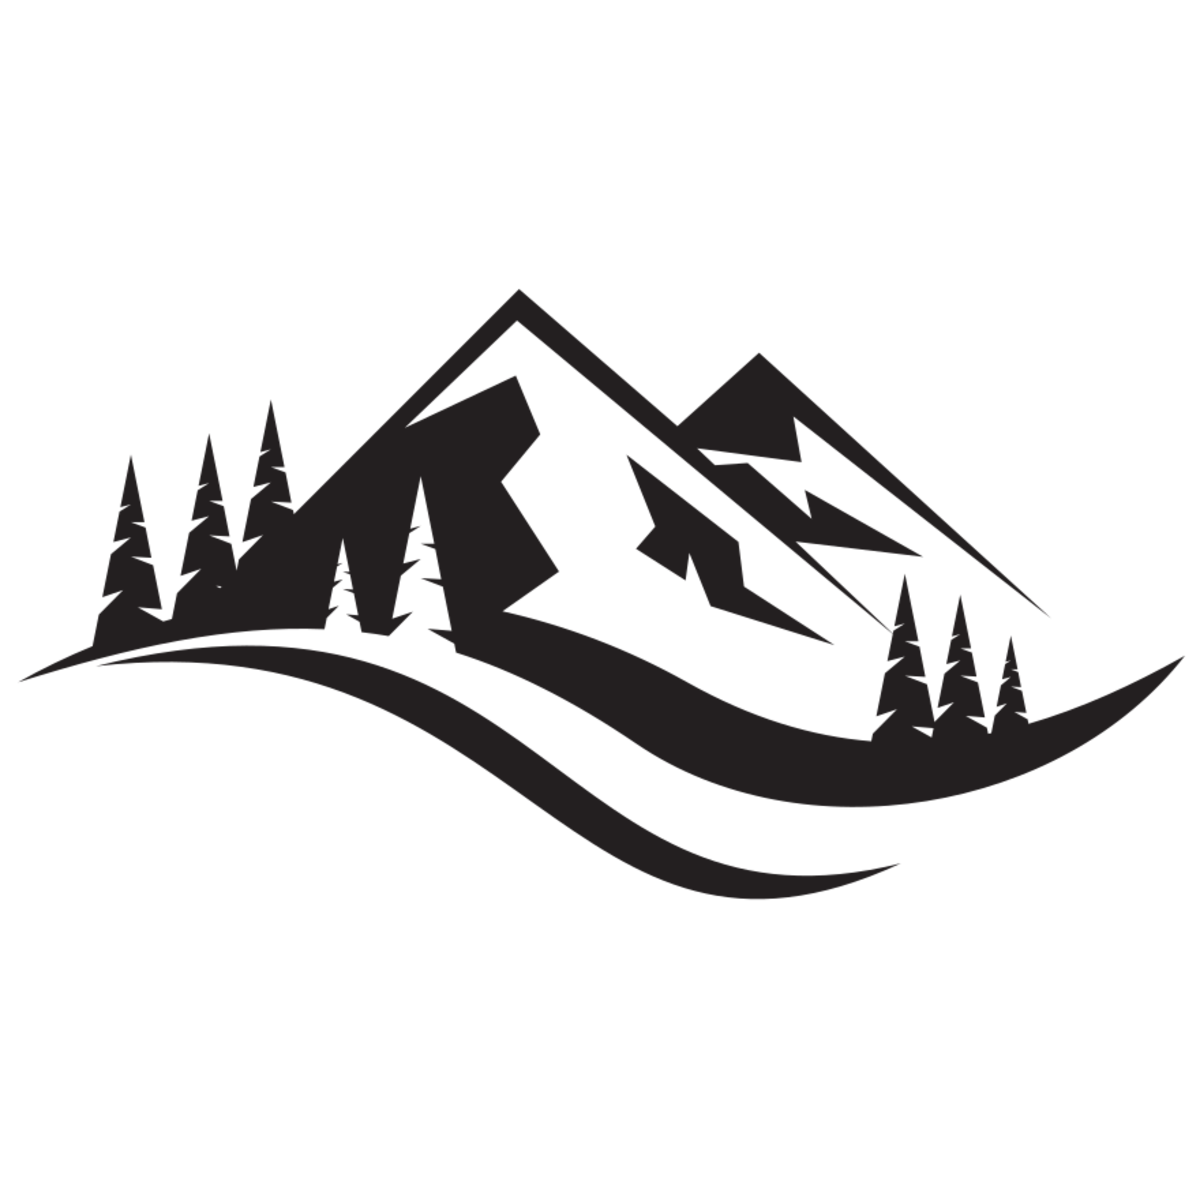 File:Mountain logo silhouette.svg - EndMyopia Wiki